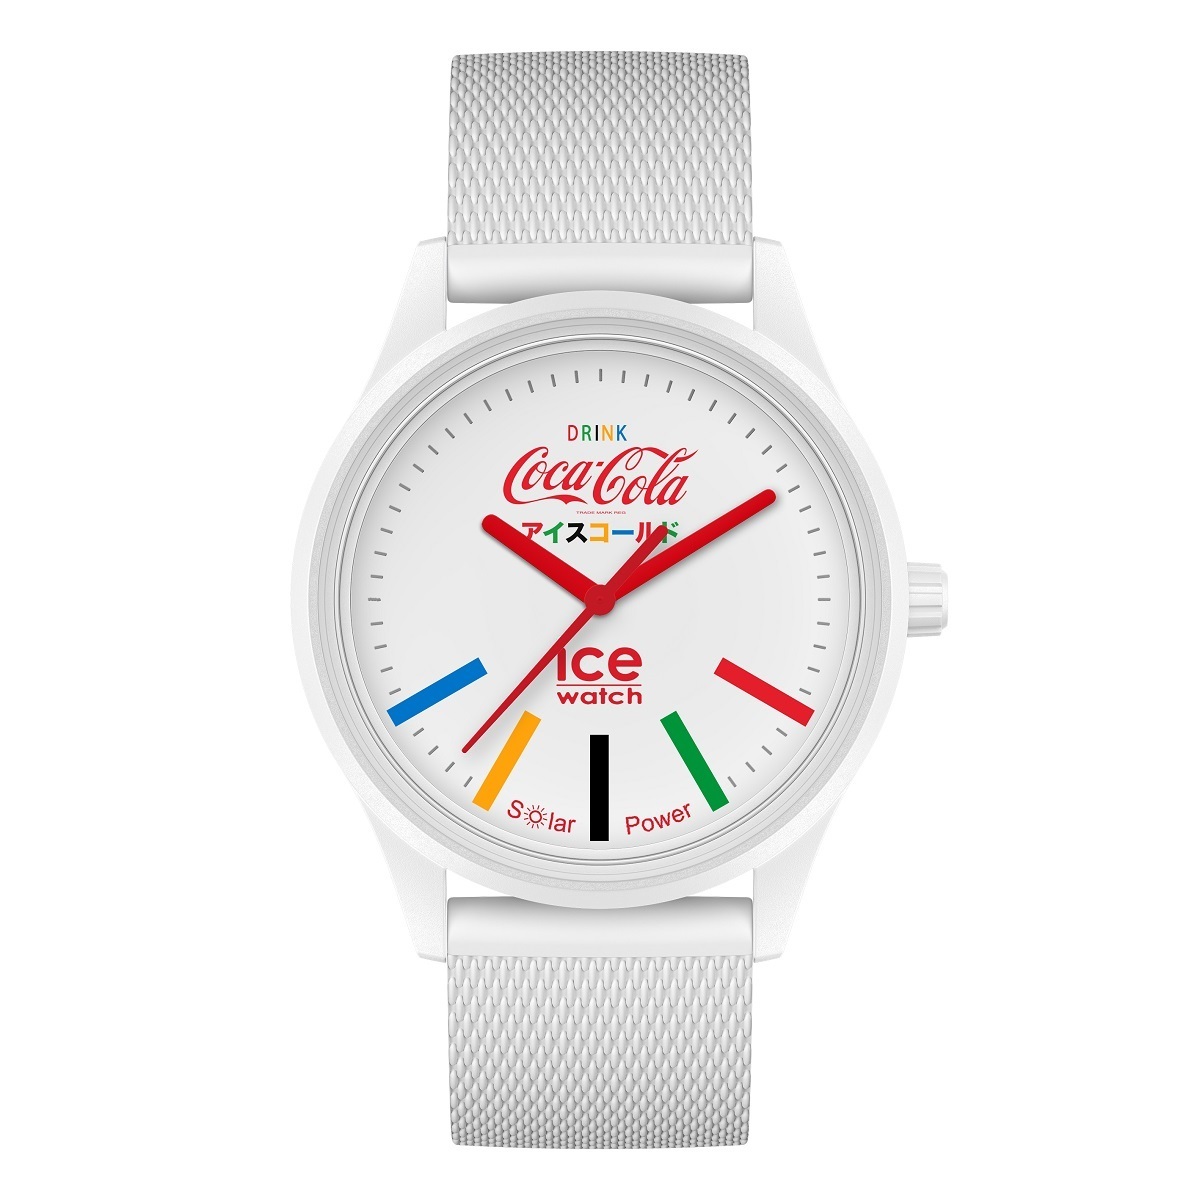 ICE WATCH アイスウォッチ 腕時計 アイスソーラーパワー ホワイト Coca Cola 40mm 019619【正規品】